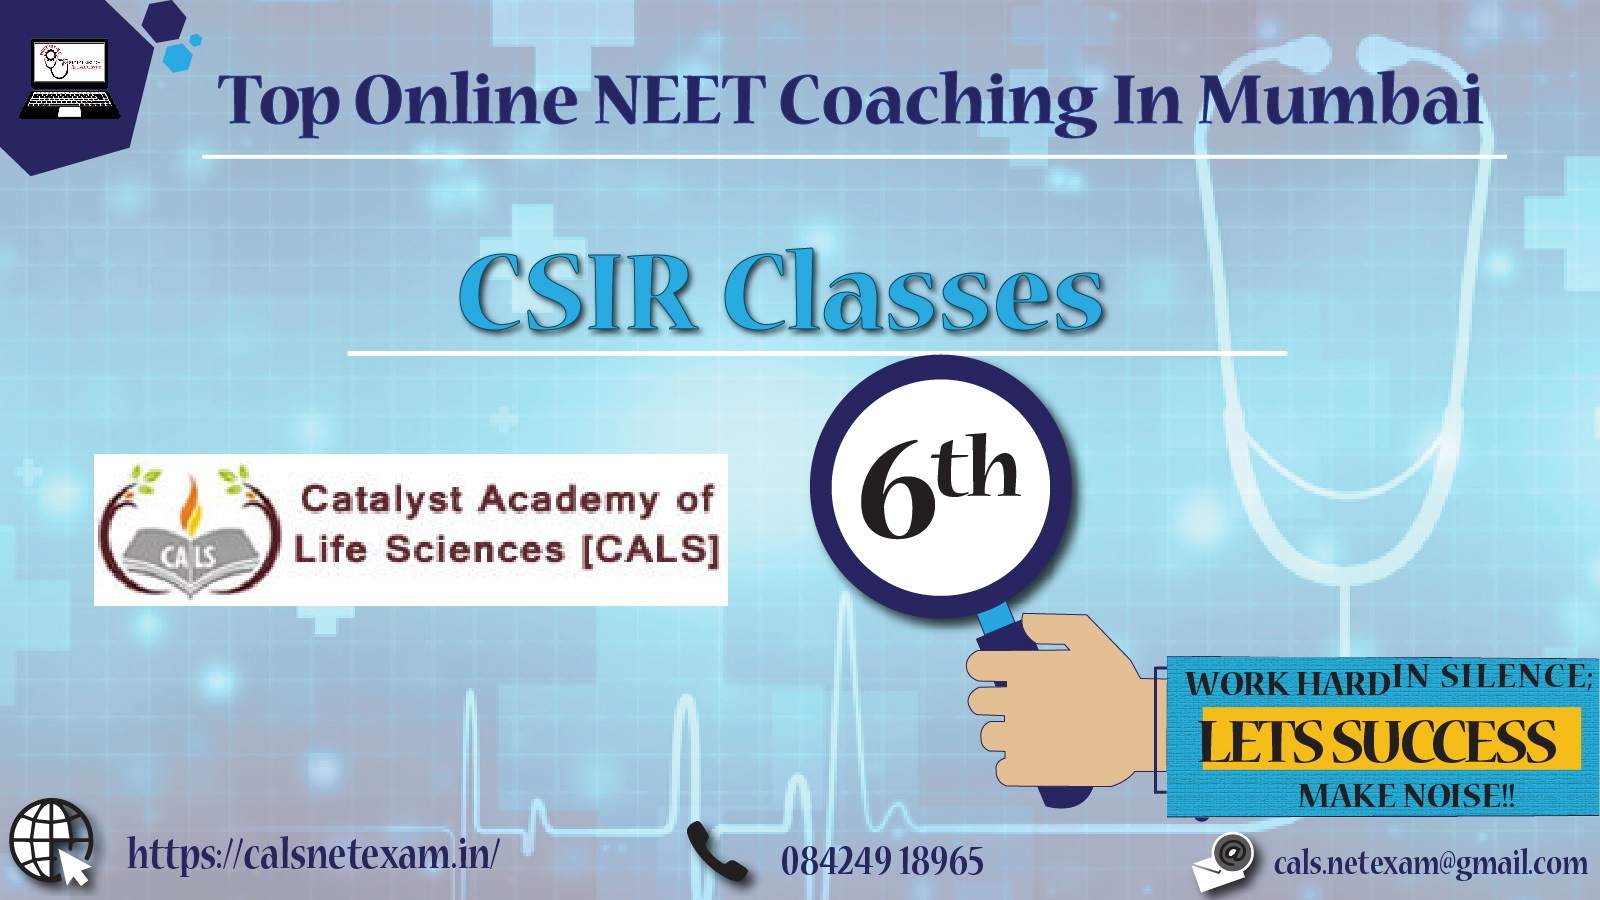 Best online Neet coaching in mumbai 